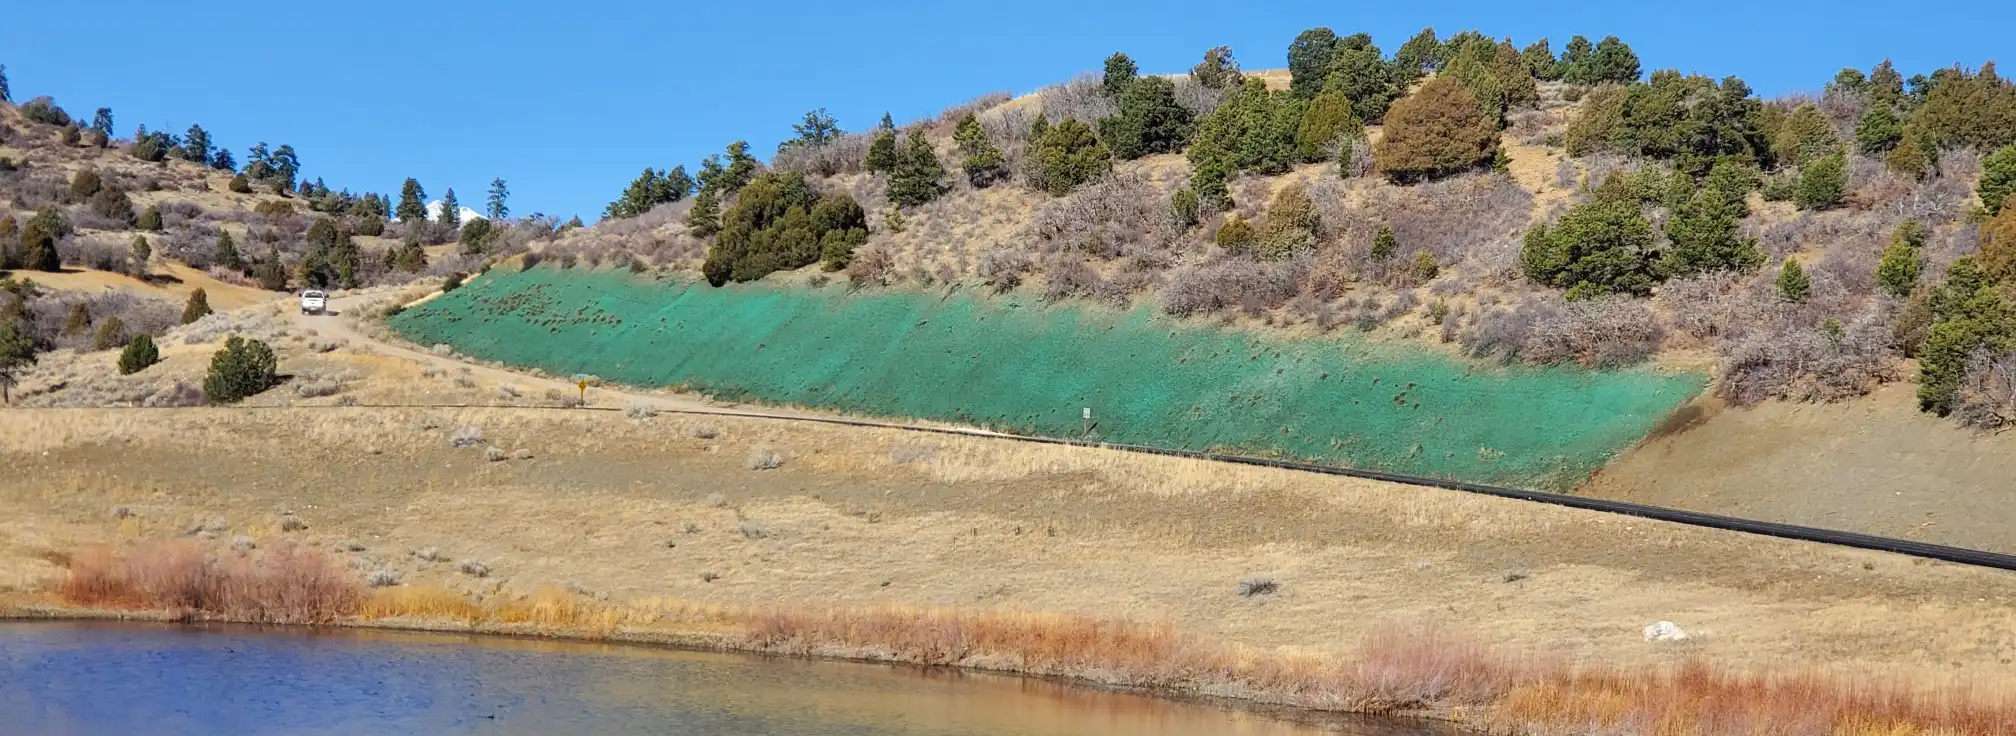 Horizon Environmental Services, Inc. in Durango, Colorado